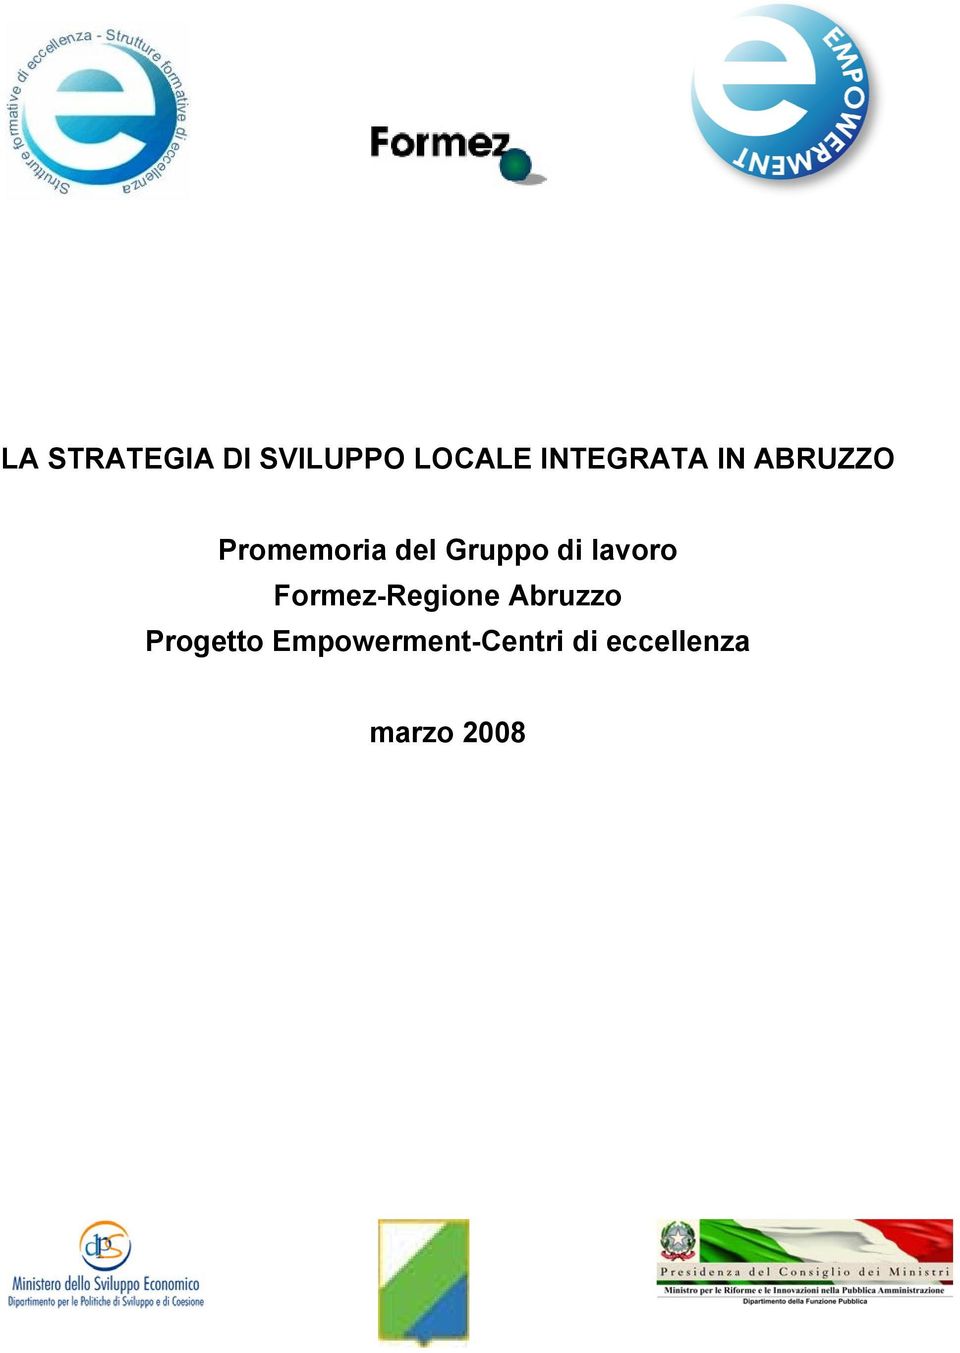 Gruppo di lavoro Formez-Regione Abruzzo